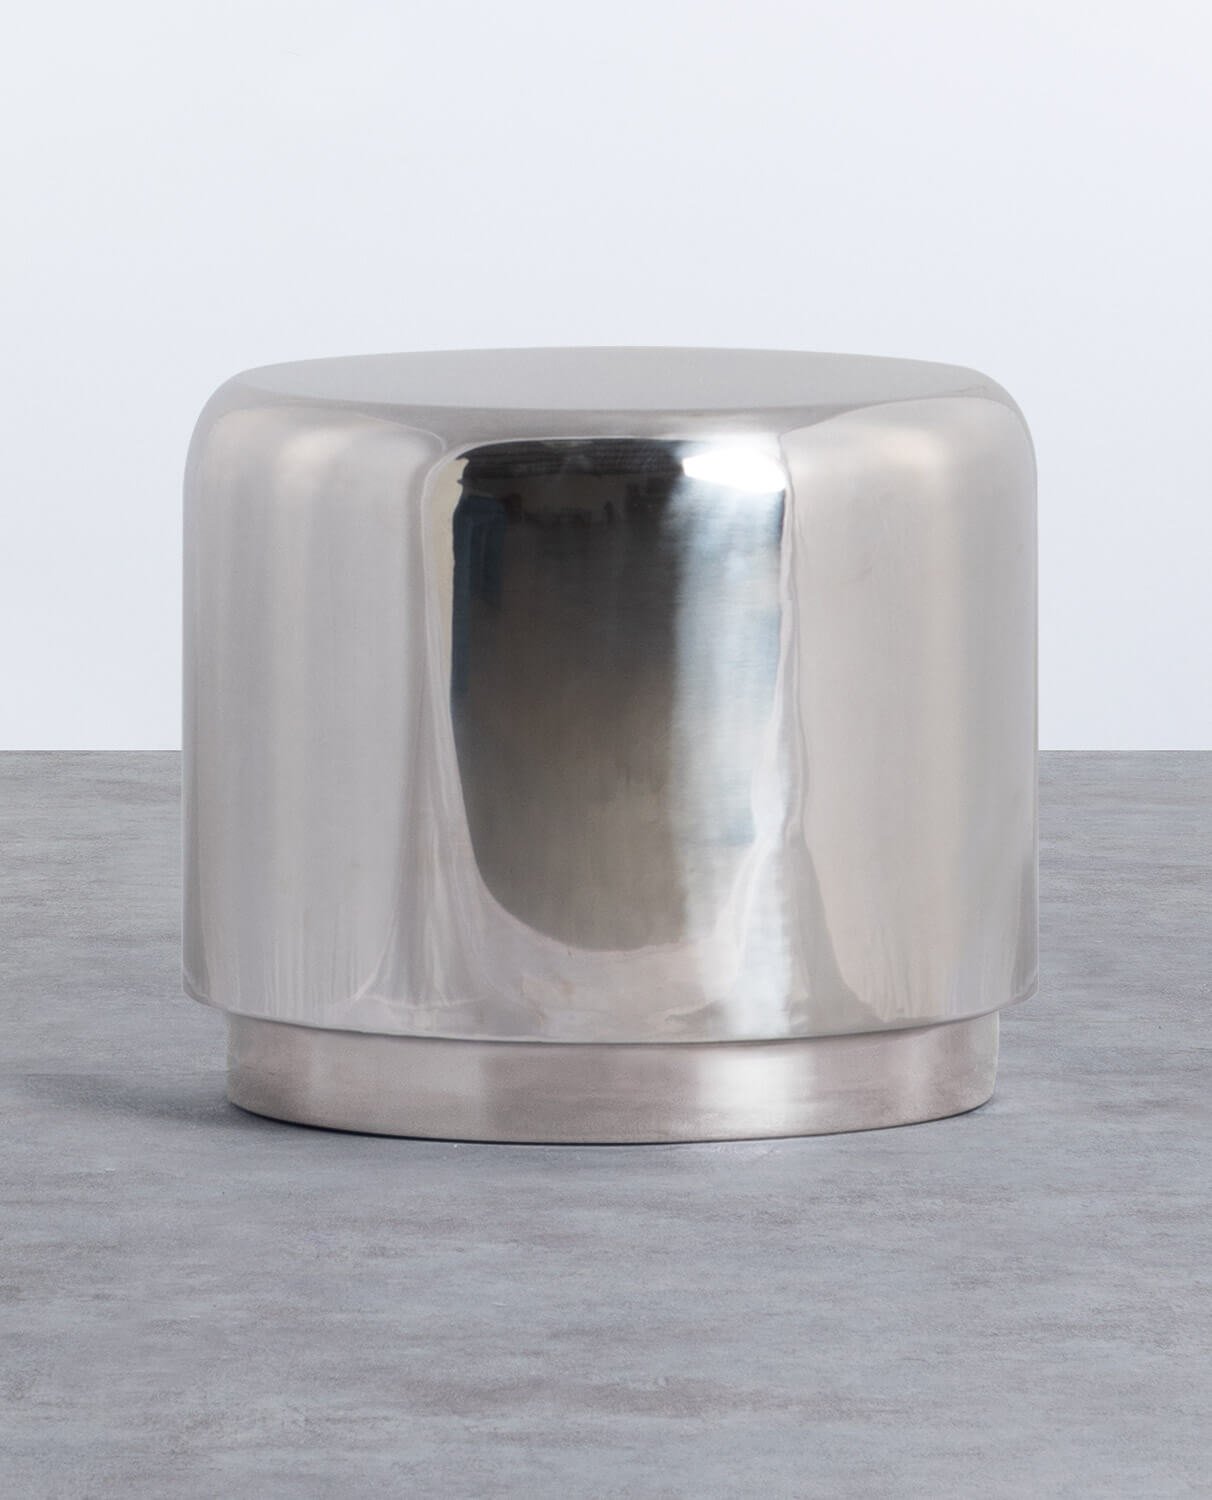 Tavolino Asuiliario Rotondo in Metallo (Ø50 cm) Onso, immagine della galleria 1